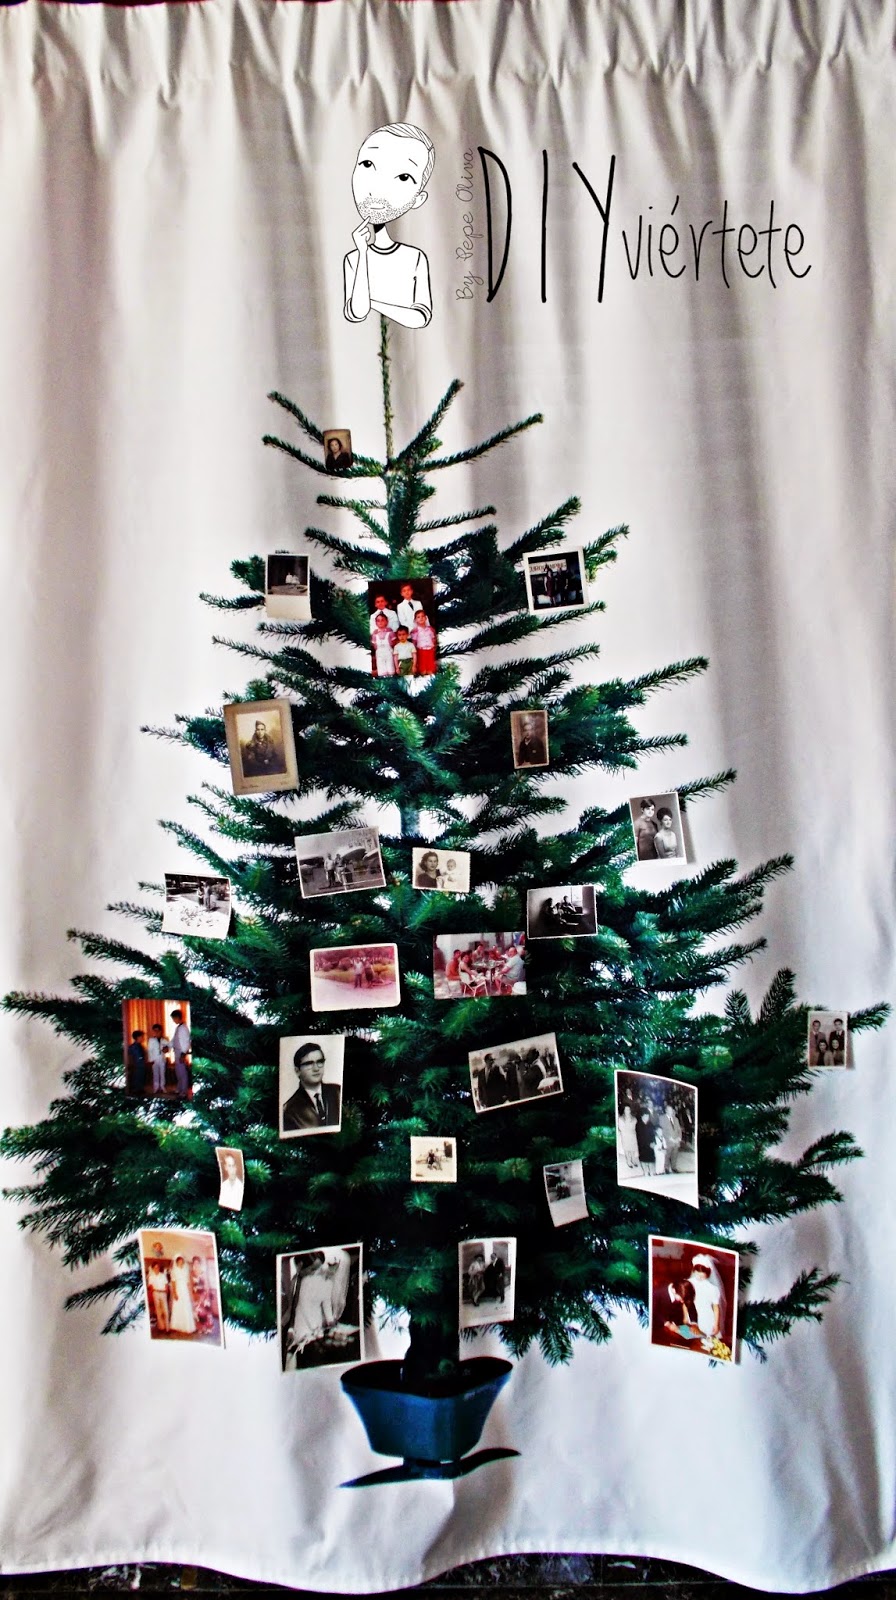 DIY-árbol navidad-textil-coser-costura-pasoapaso-recuerdos-vintage-fotografía-DIYviertete-blogersando-diciembre- (1)gif100